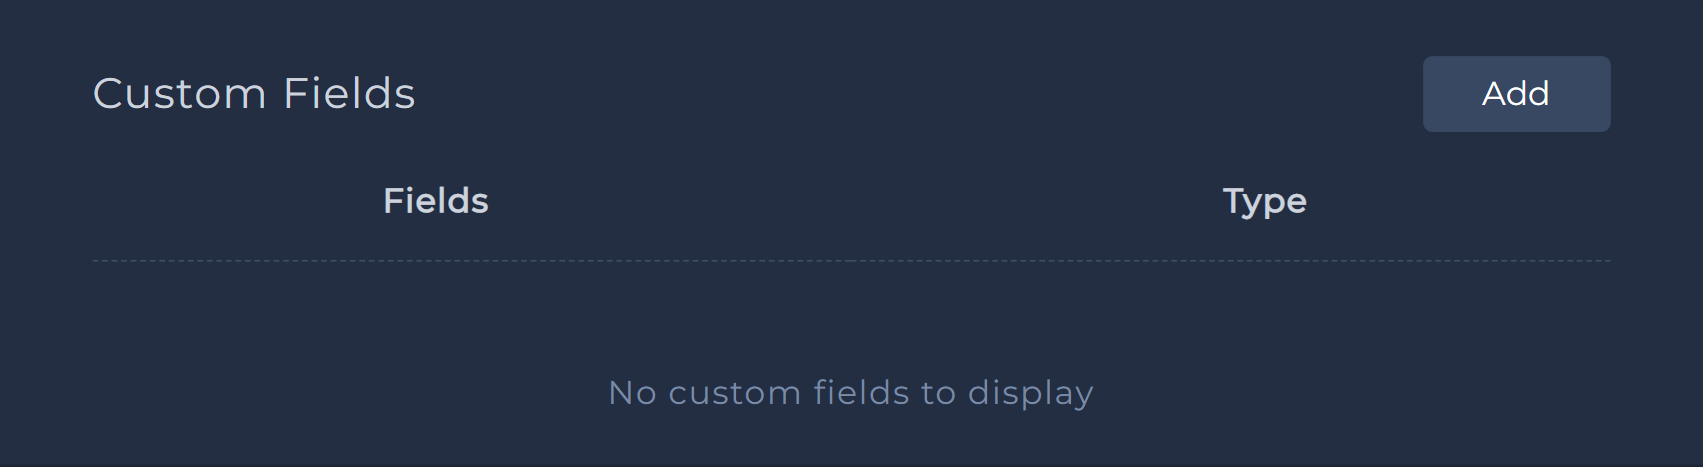 app settings - custom fields